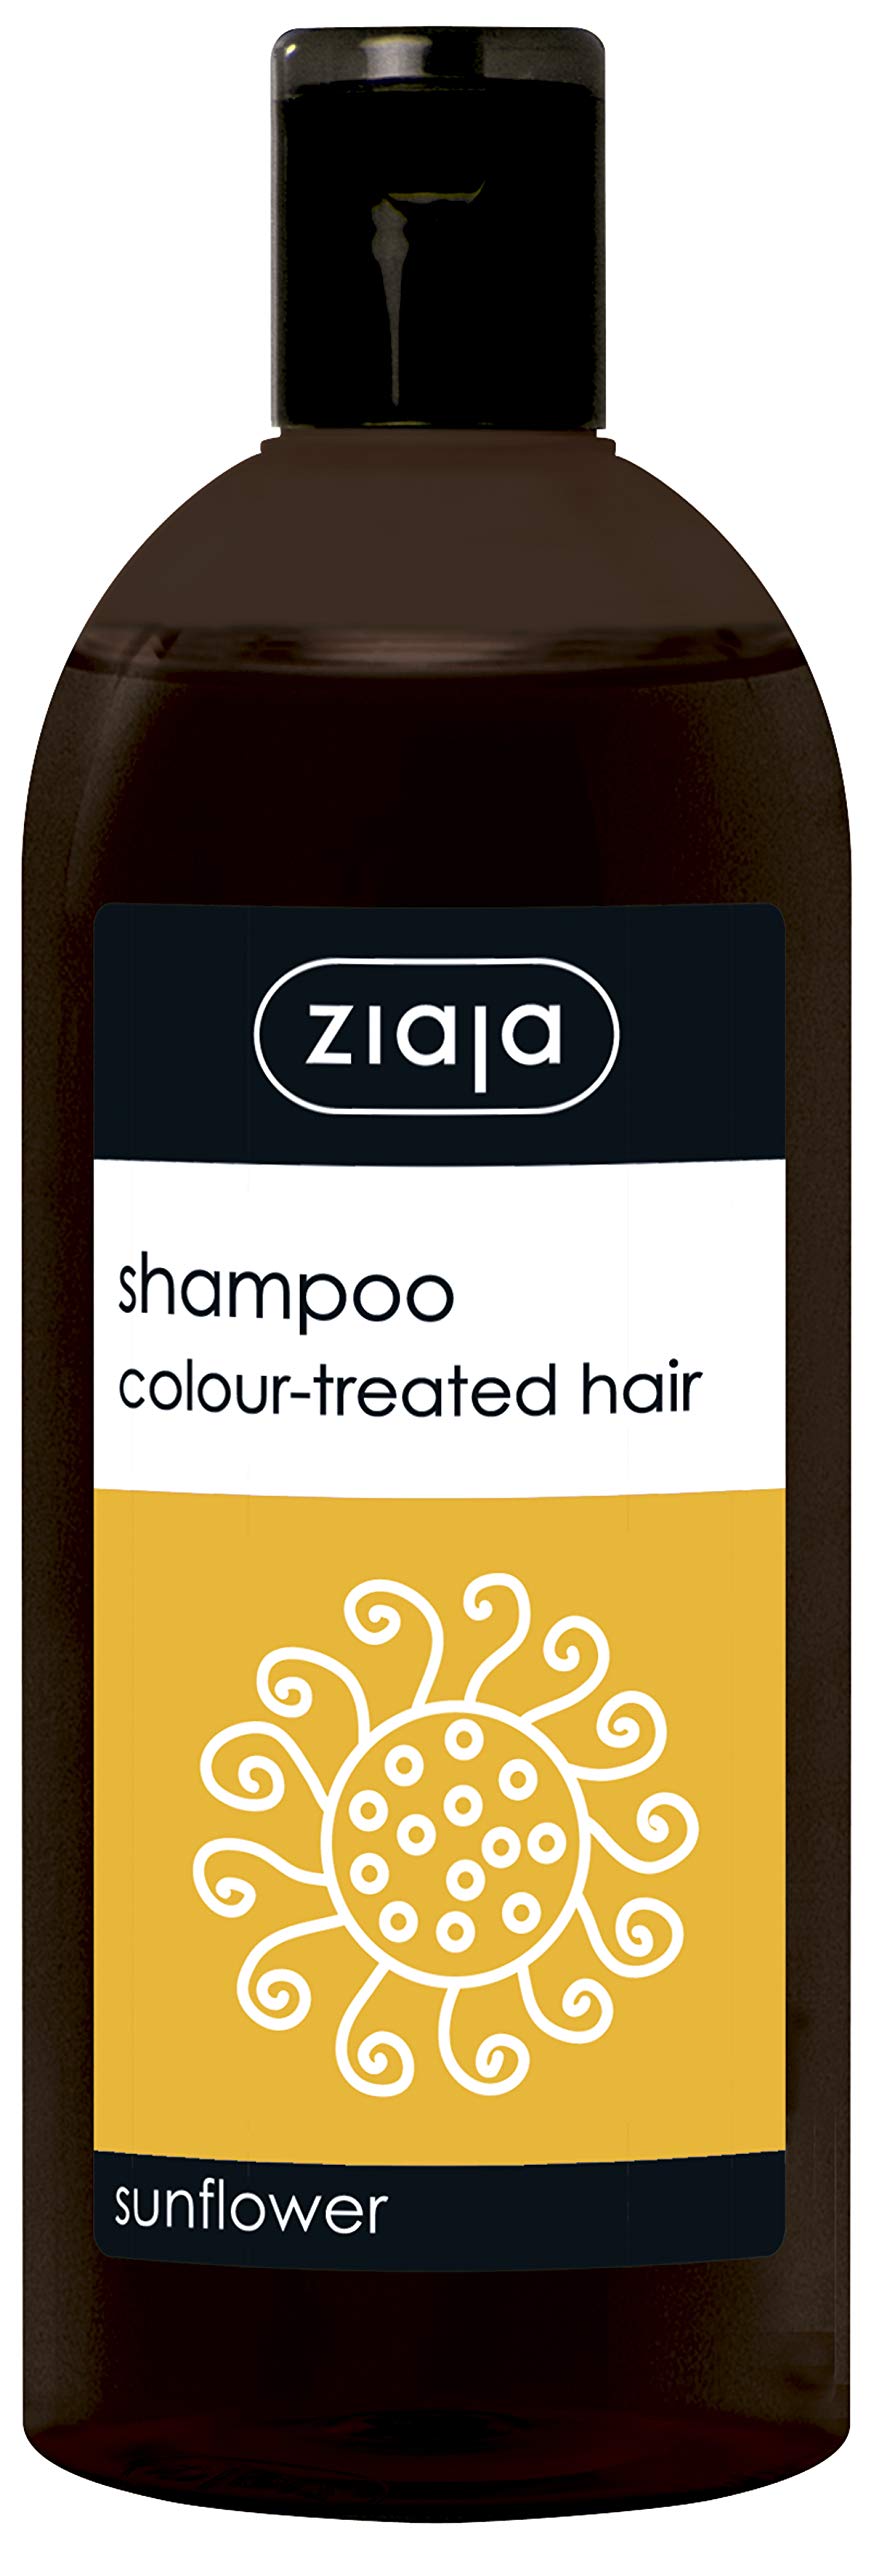 szampon do wlosow farbowanych slonecznikowy z ziaji